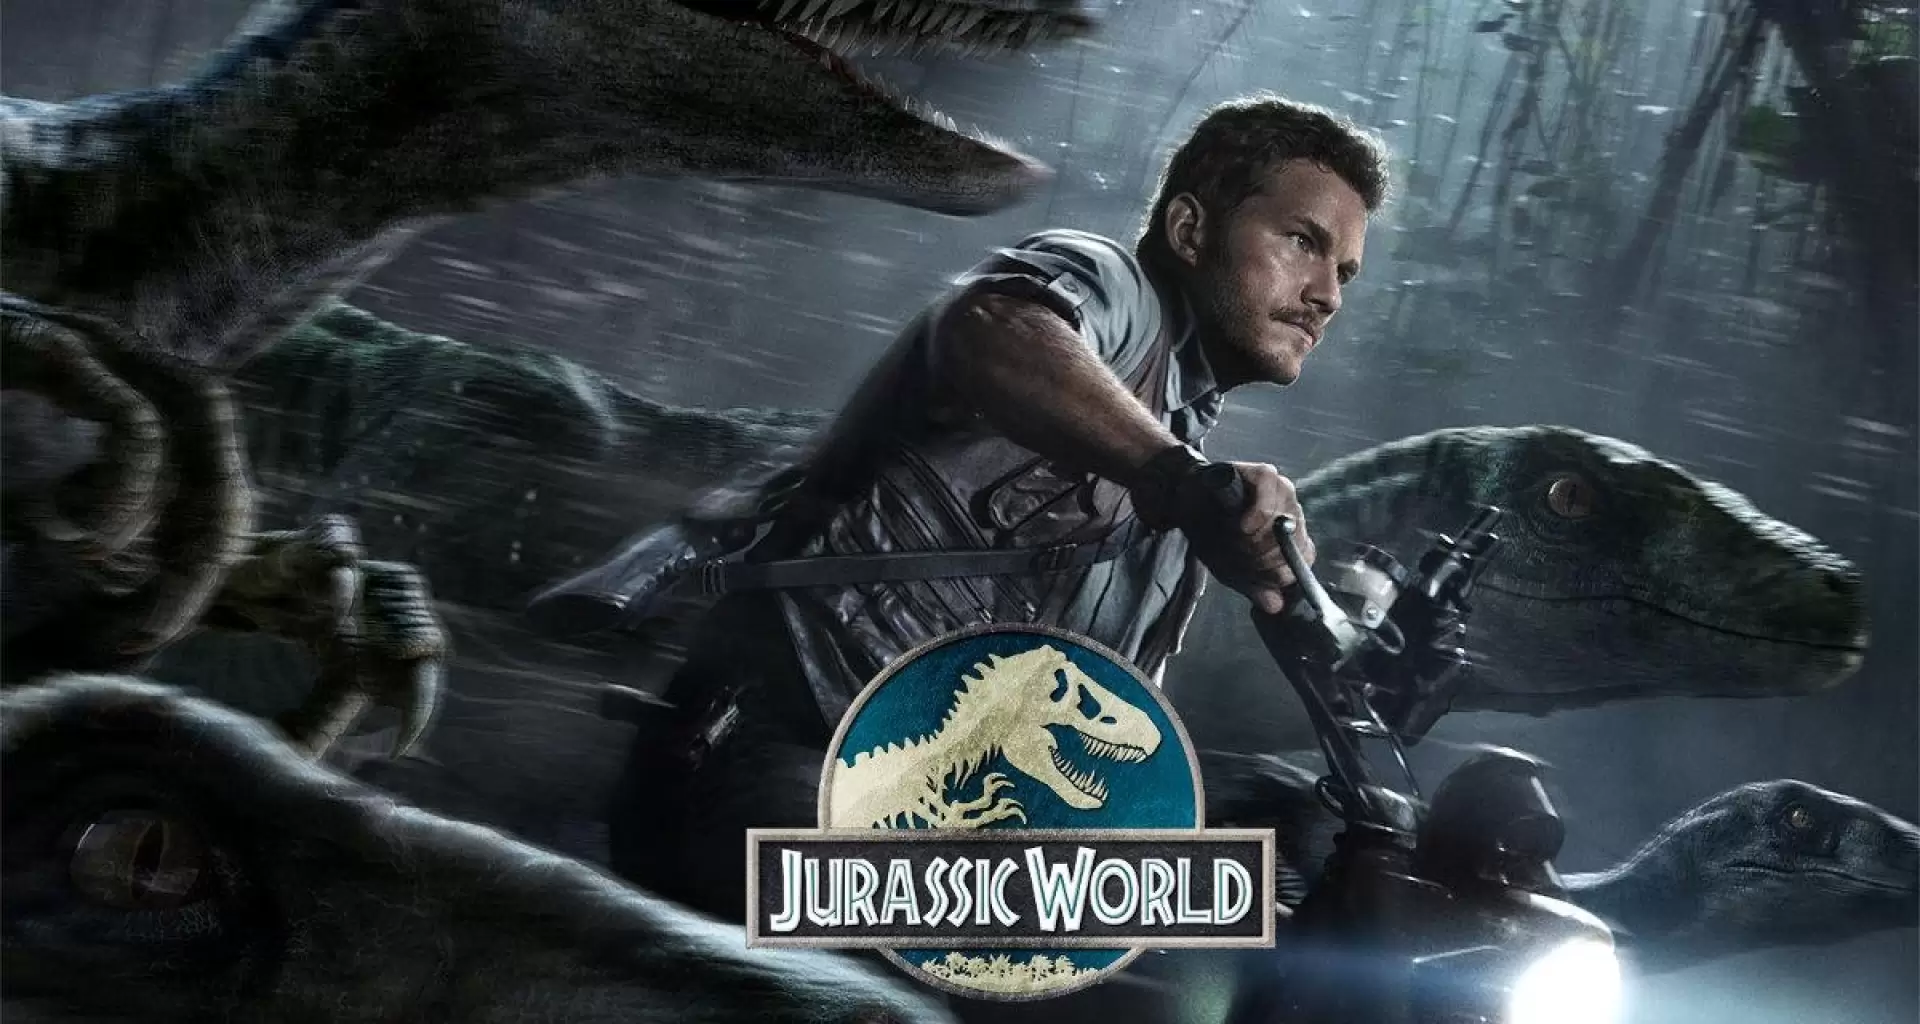 دانلود فیلم Jurassic World 2015 (دنیای ژوراسیک) با زیرنویس فارسی و تماشای آنلاین